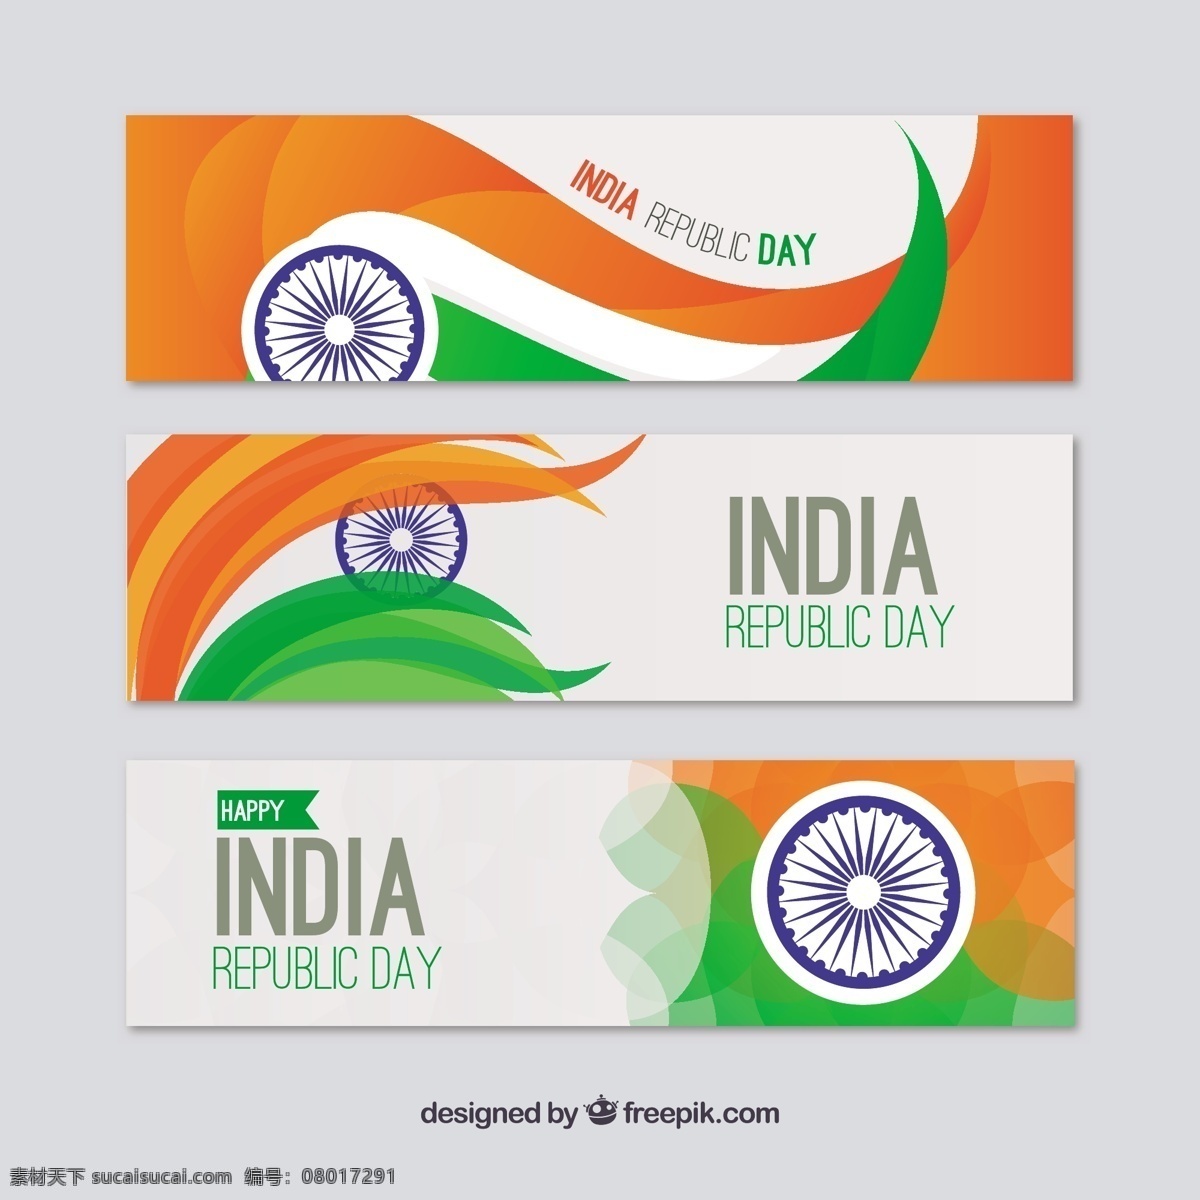 印度 共和 日 横幅 包 旗帜 节日 头 和平 印度国旗 独立日 国家 自由 爱国 一月 独立 轮 白色